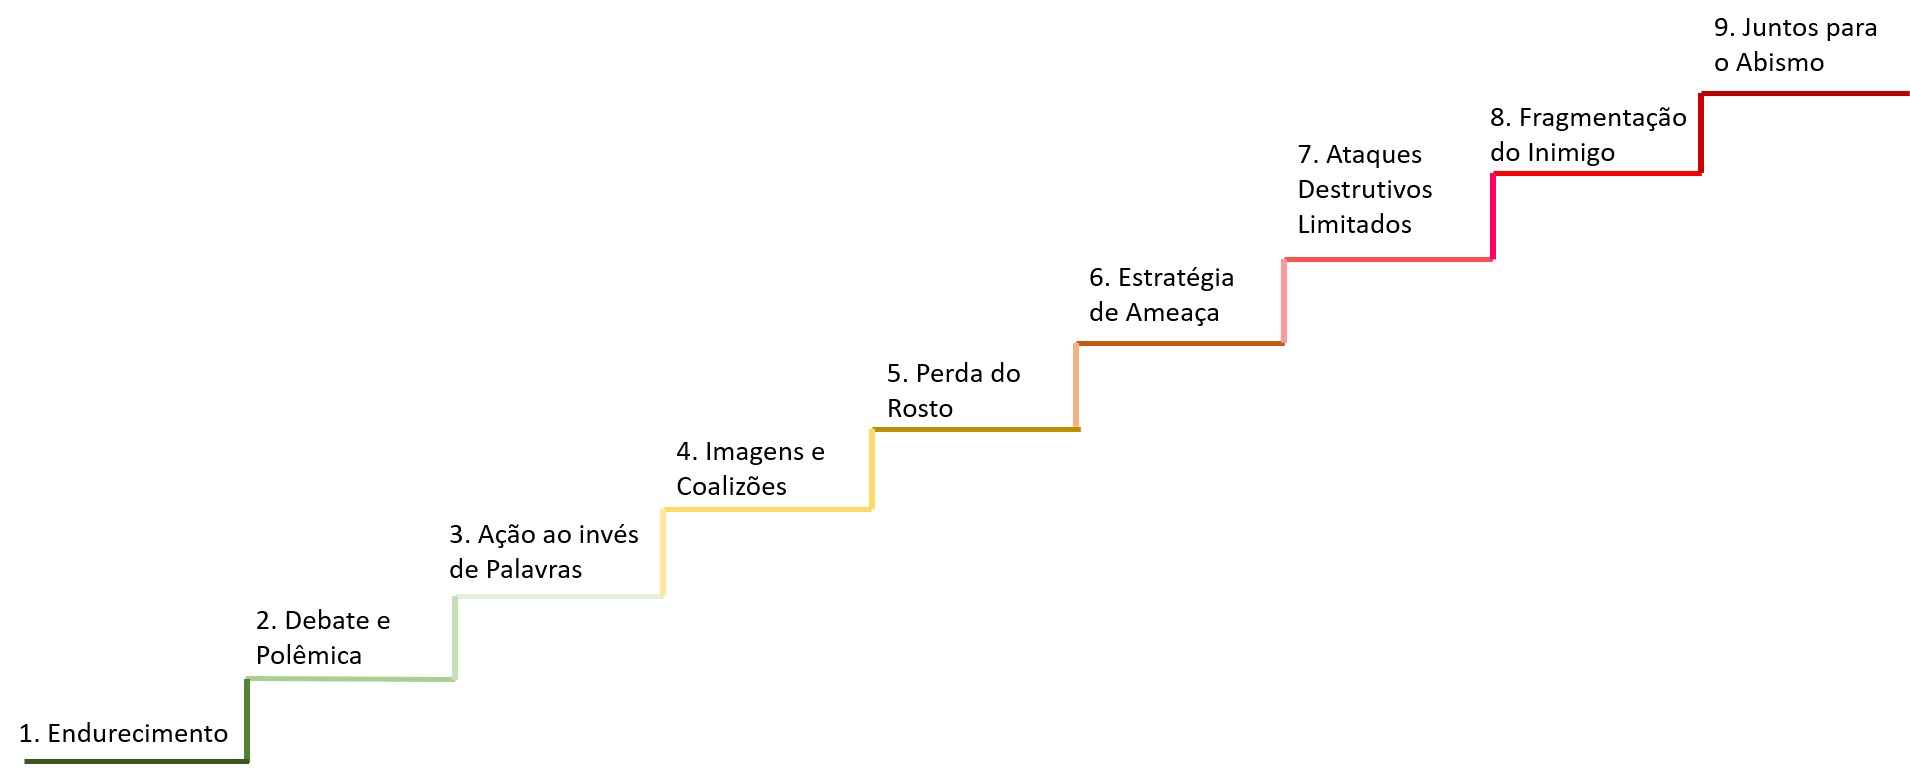 É o mesmo modelo de conflitos apresentado anteriormente, porém agora a escada está na ascendente. Também aparecem cores nos grandes grupos. Os 3 primeiros níveis (ganha-ganha) estão verdes, os níveis 4, 5 e 6, ganha-perde são amarelos. Os últimos três níveis (perde-perde) estão em vermelho.